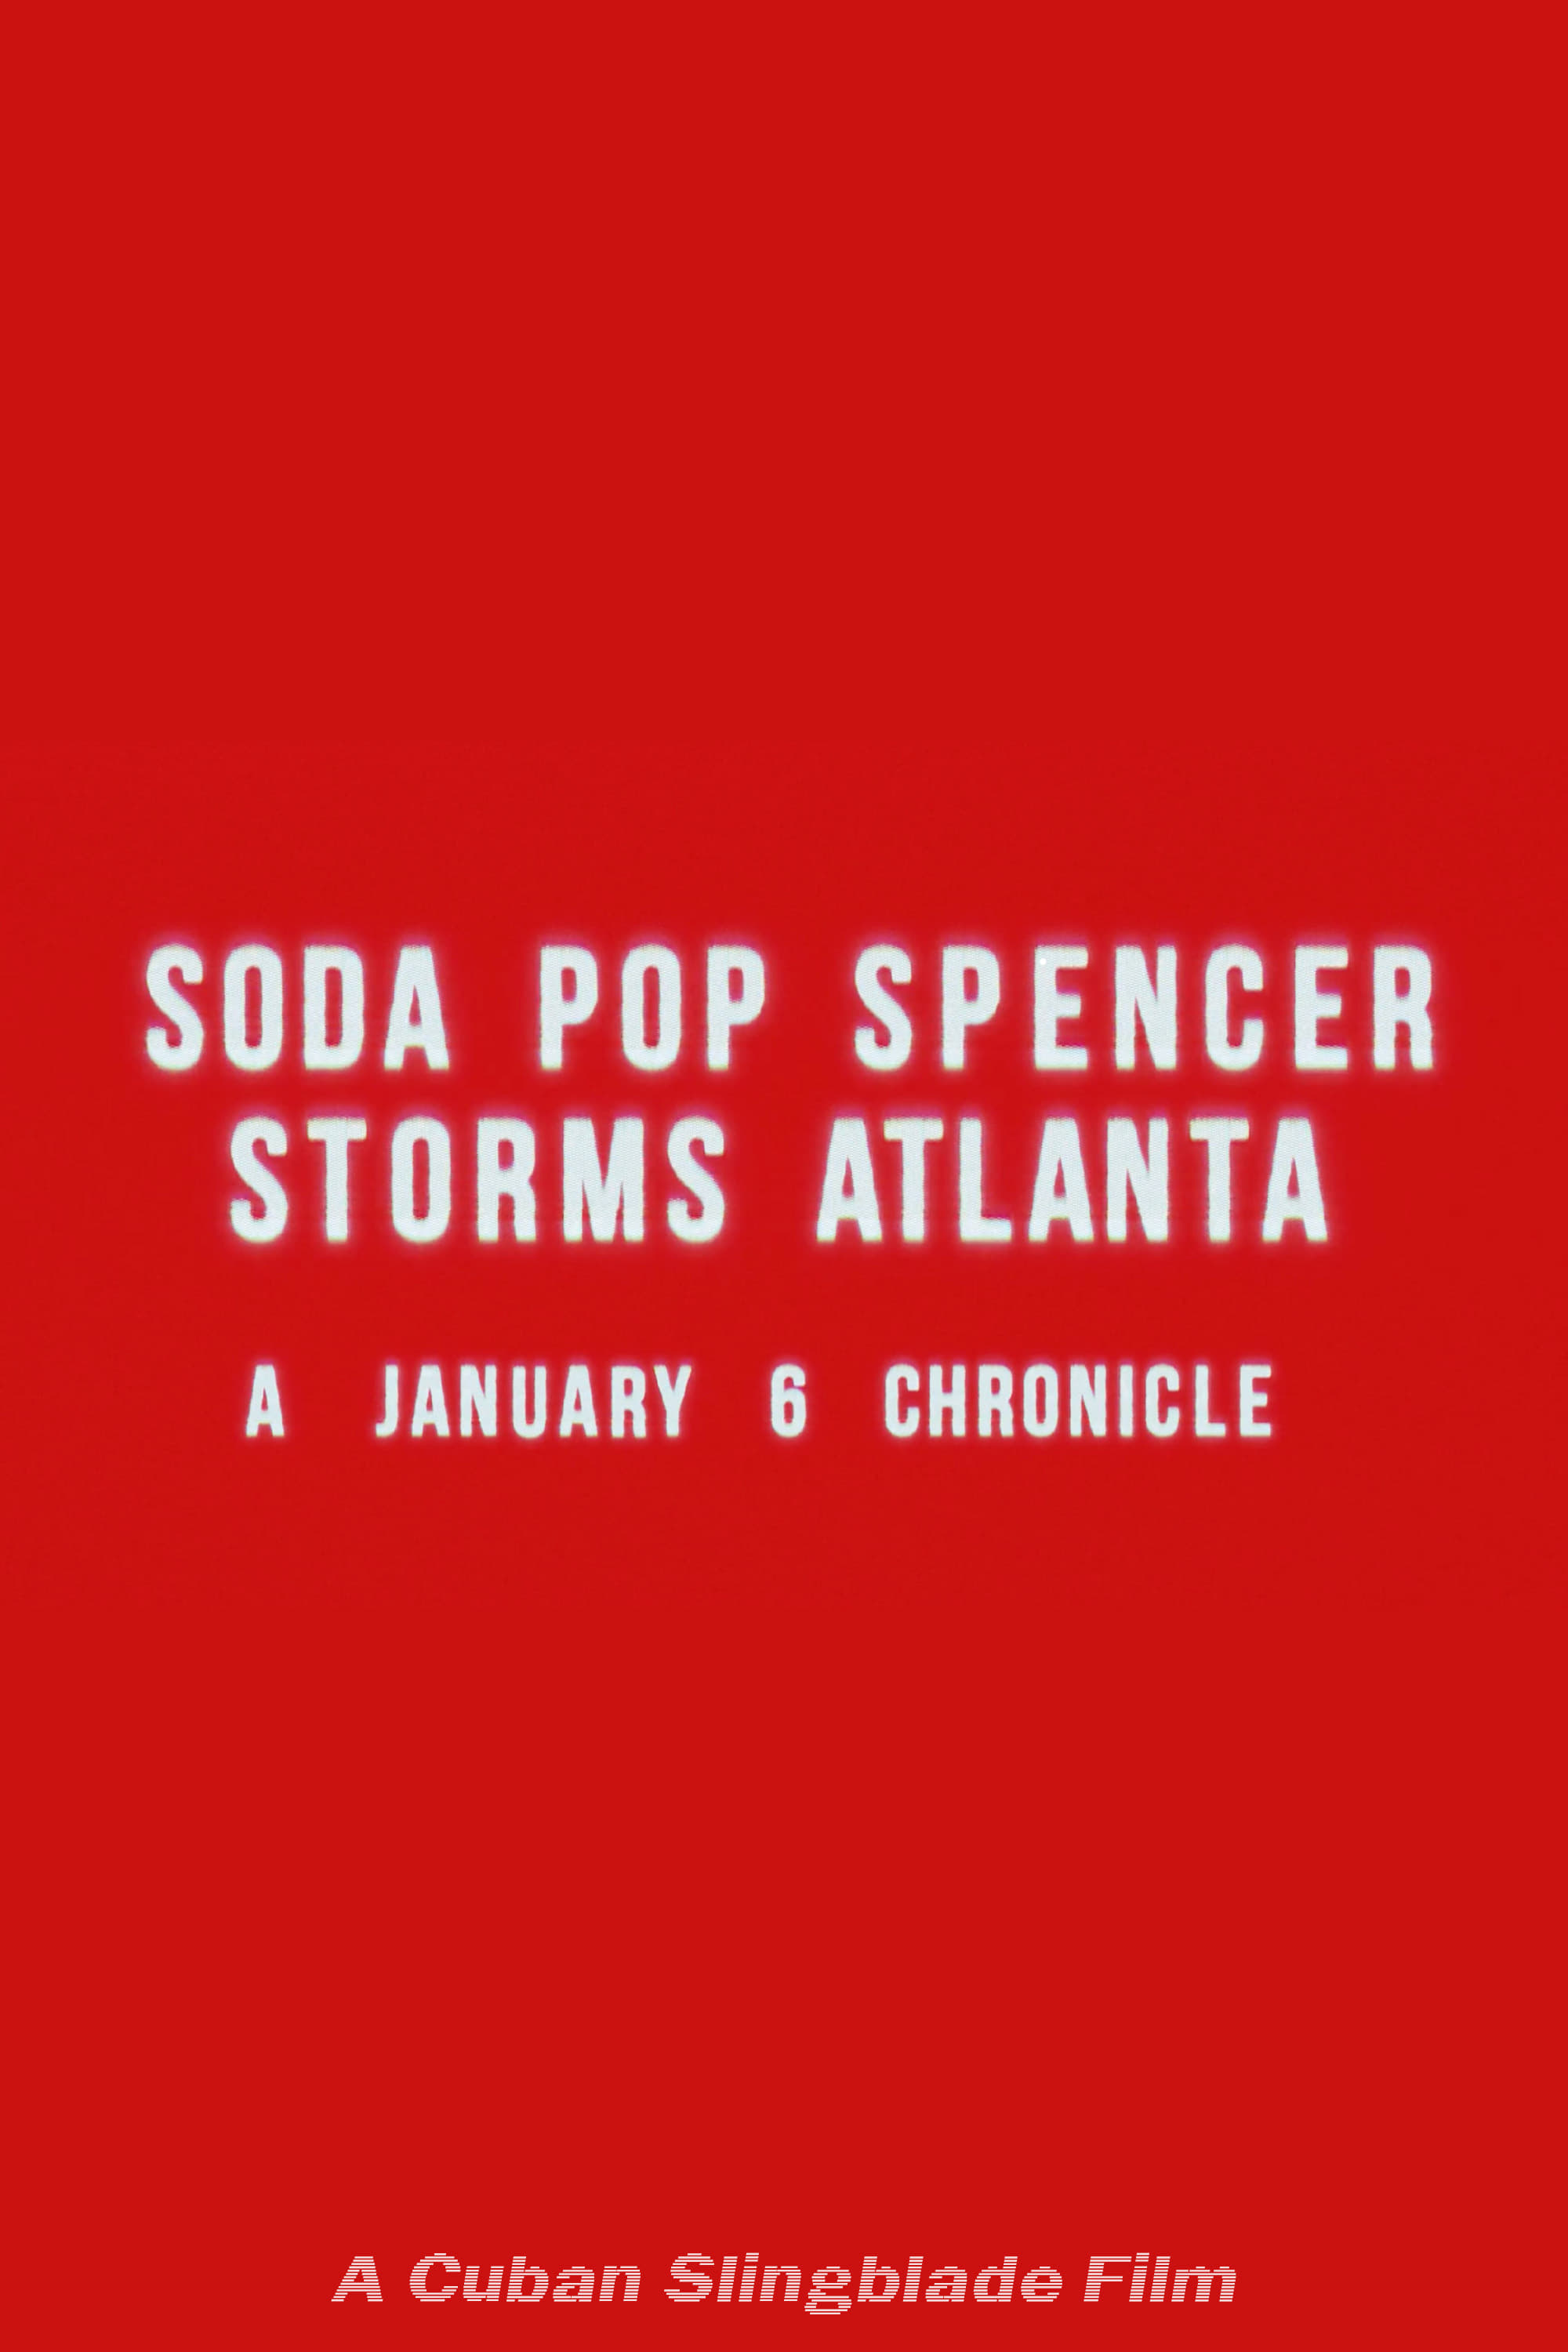 Soda Pop Spencer Storms Atlanta: A January 6th Chronicle